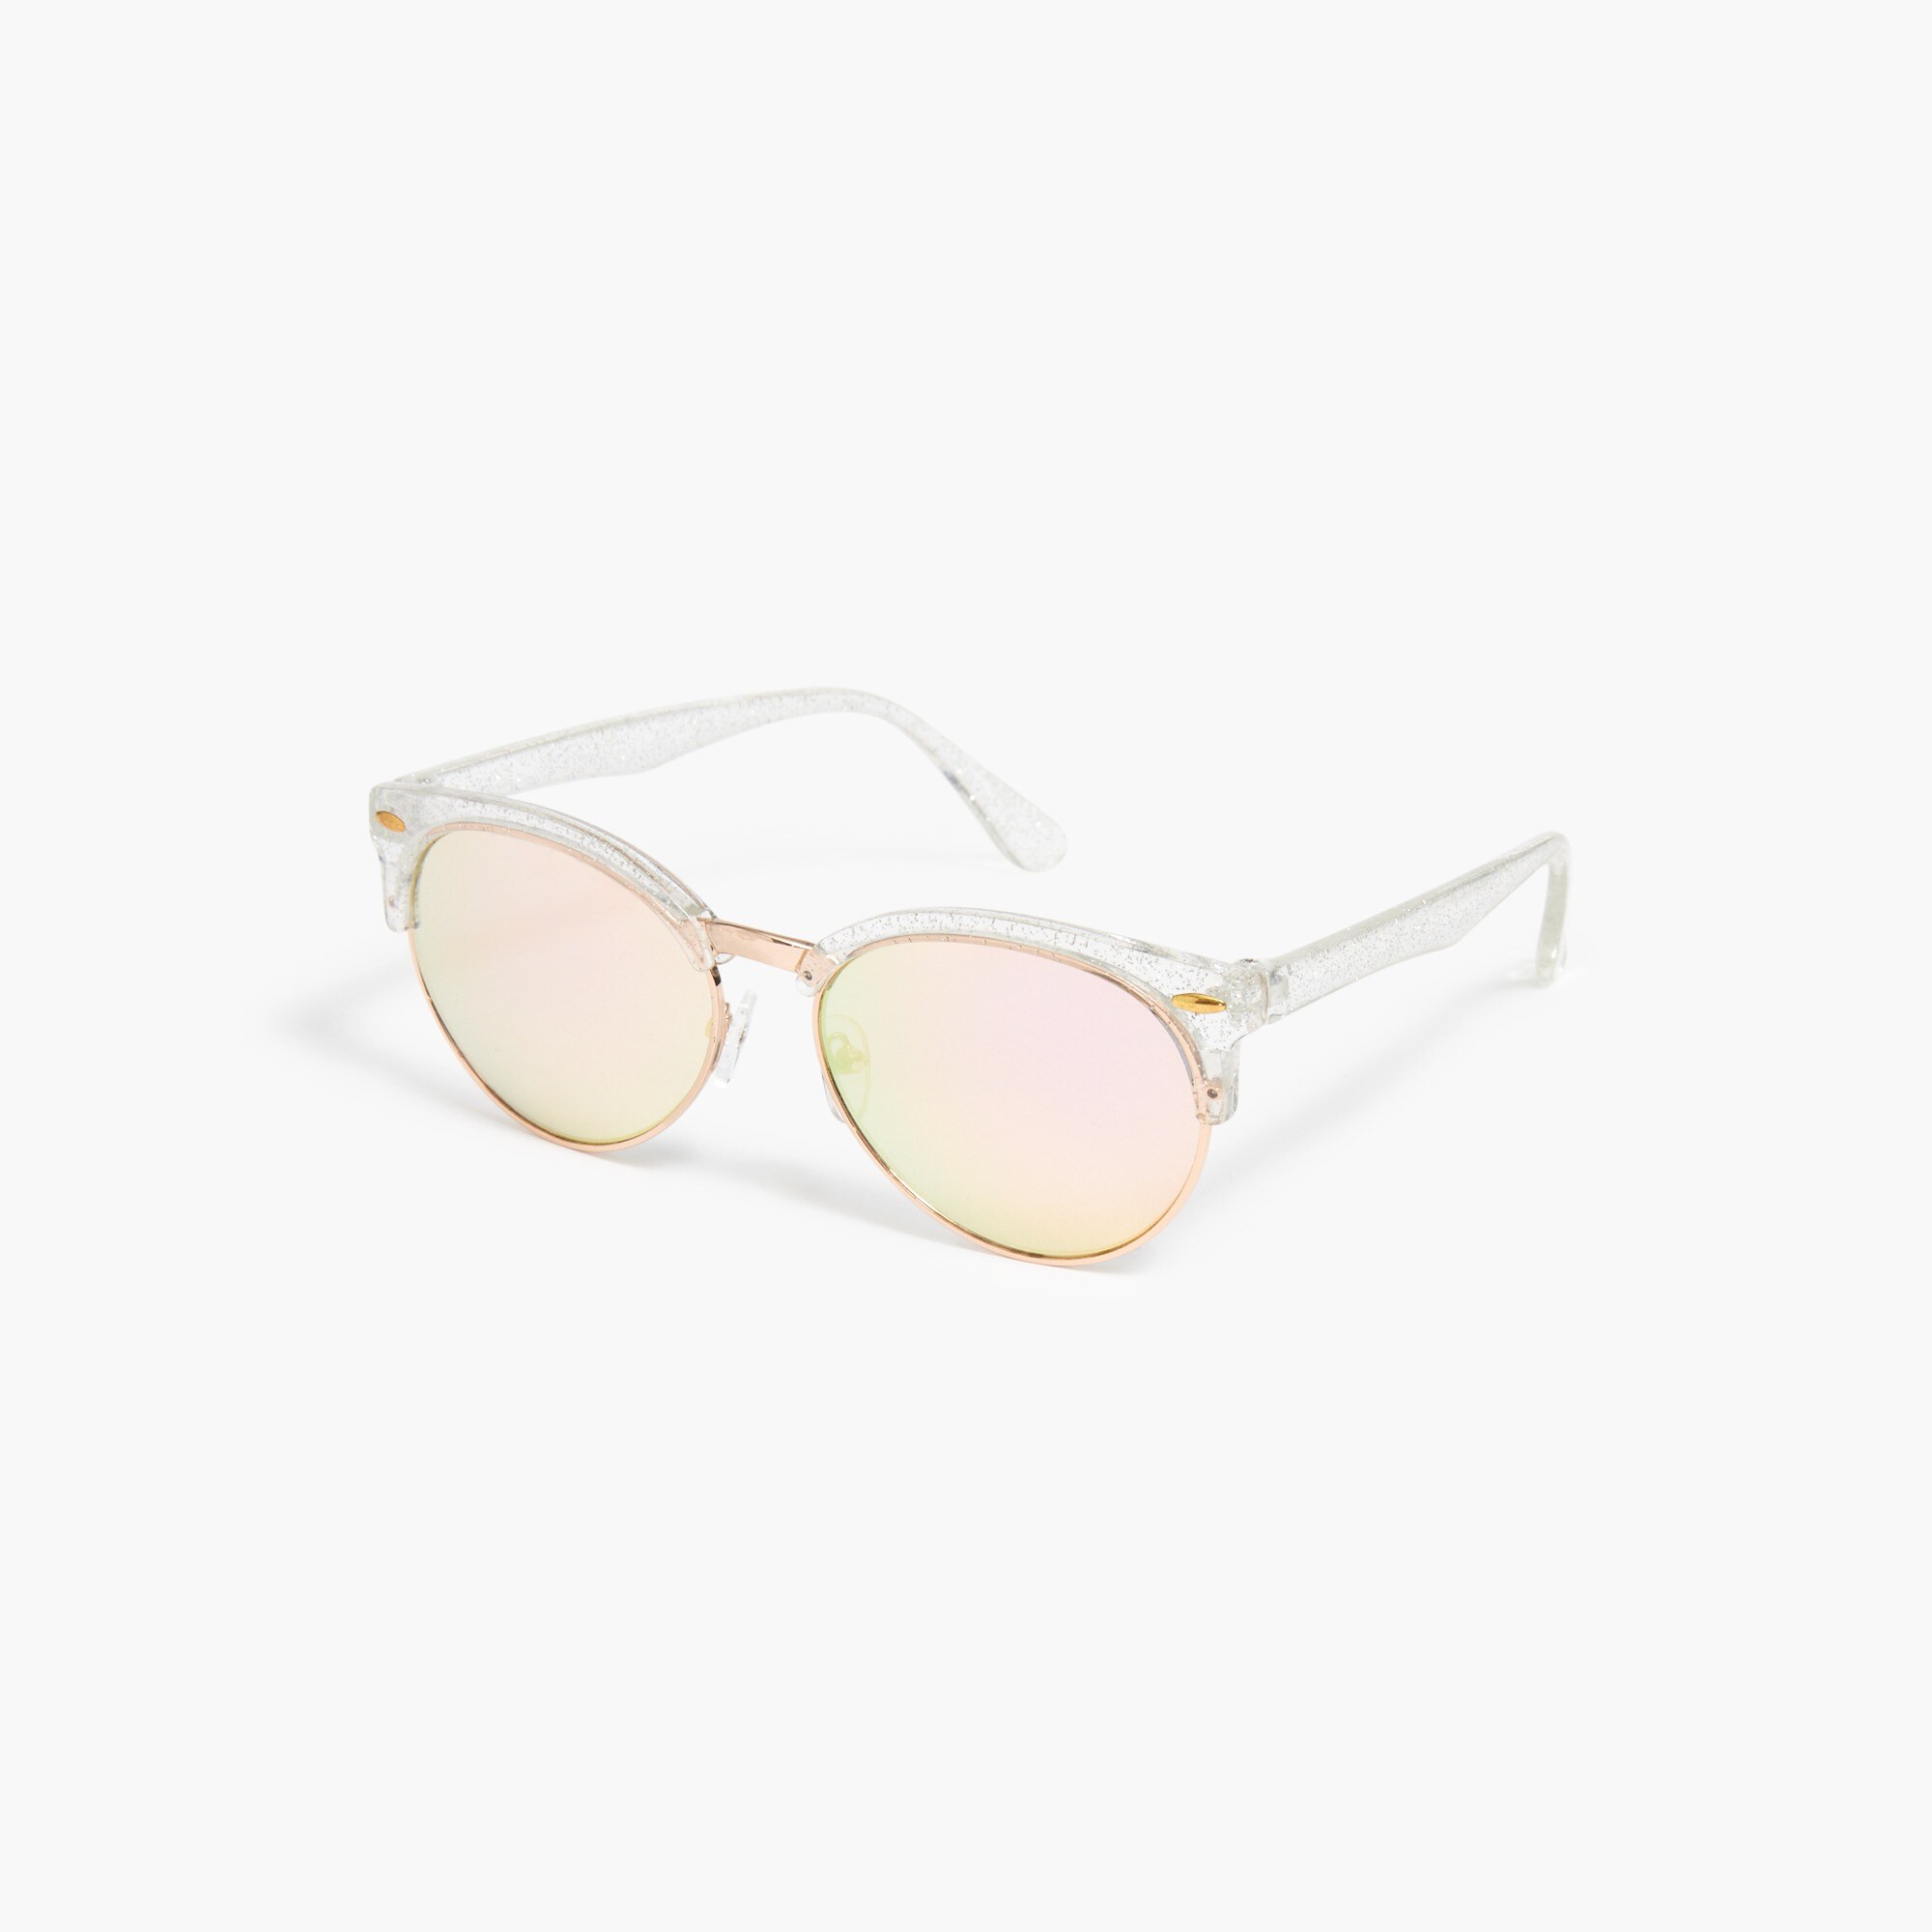  Girls' glitter-frame sunglasses